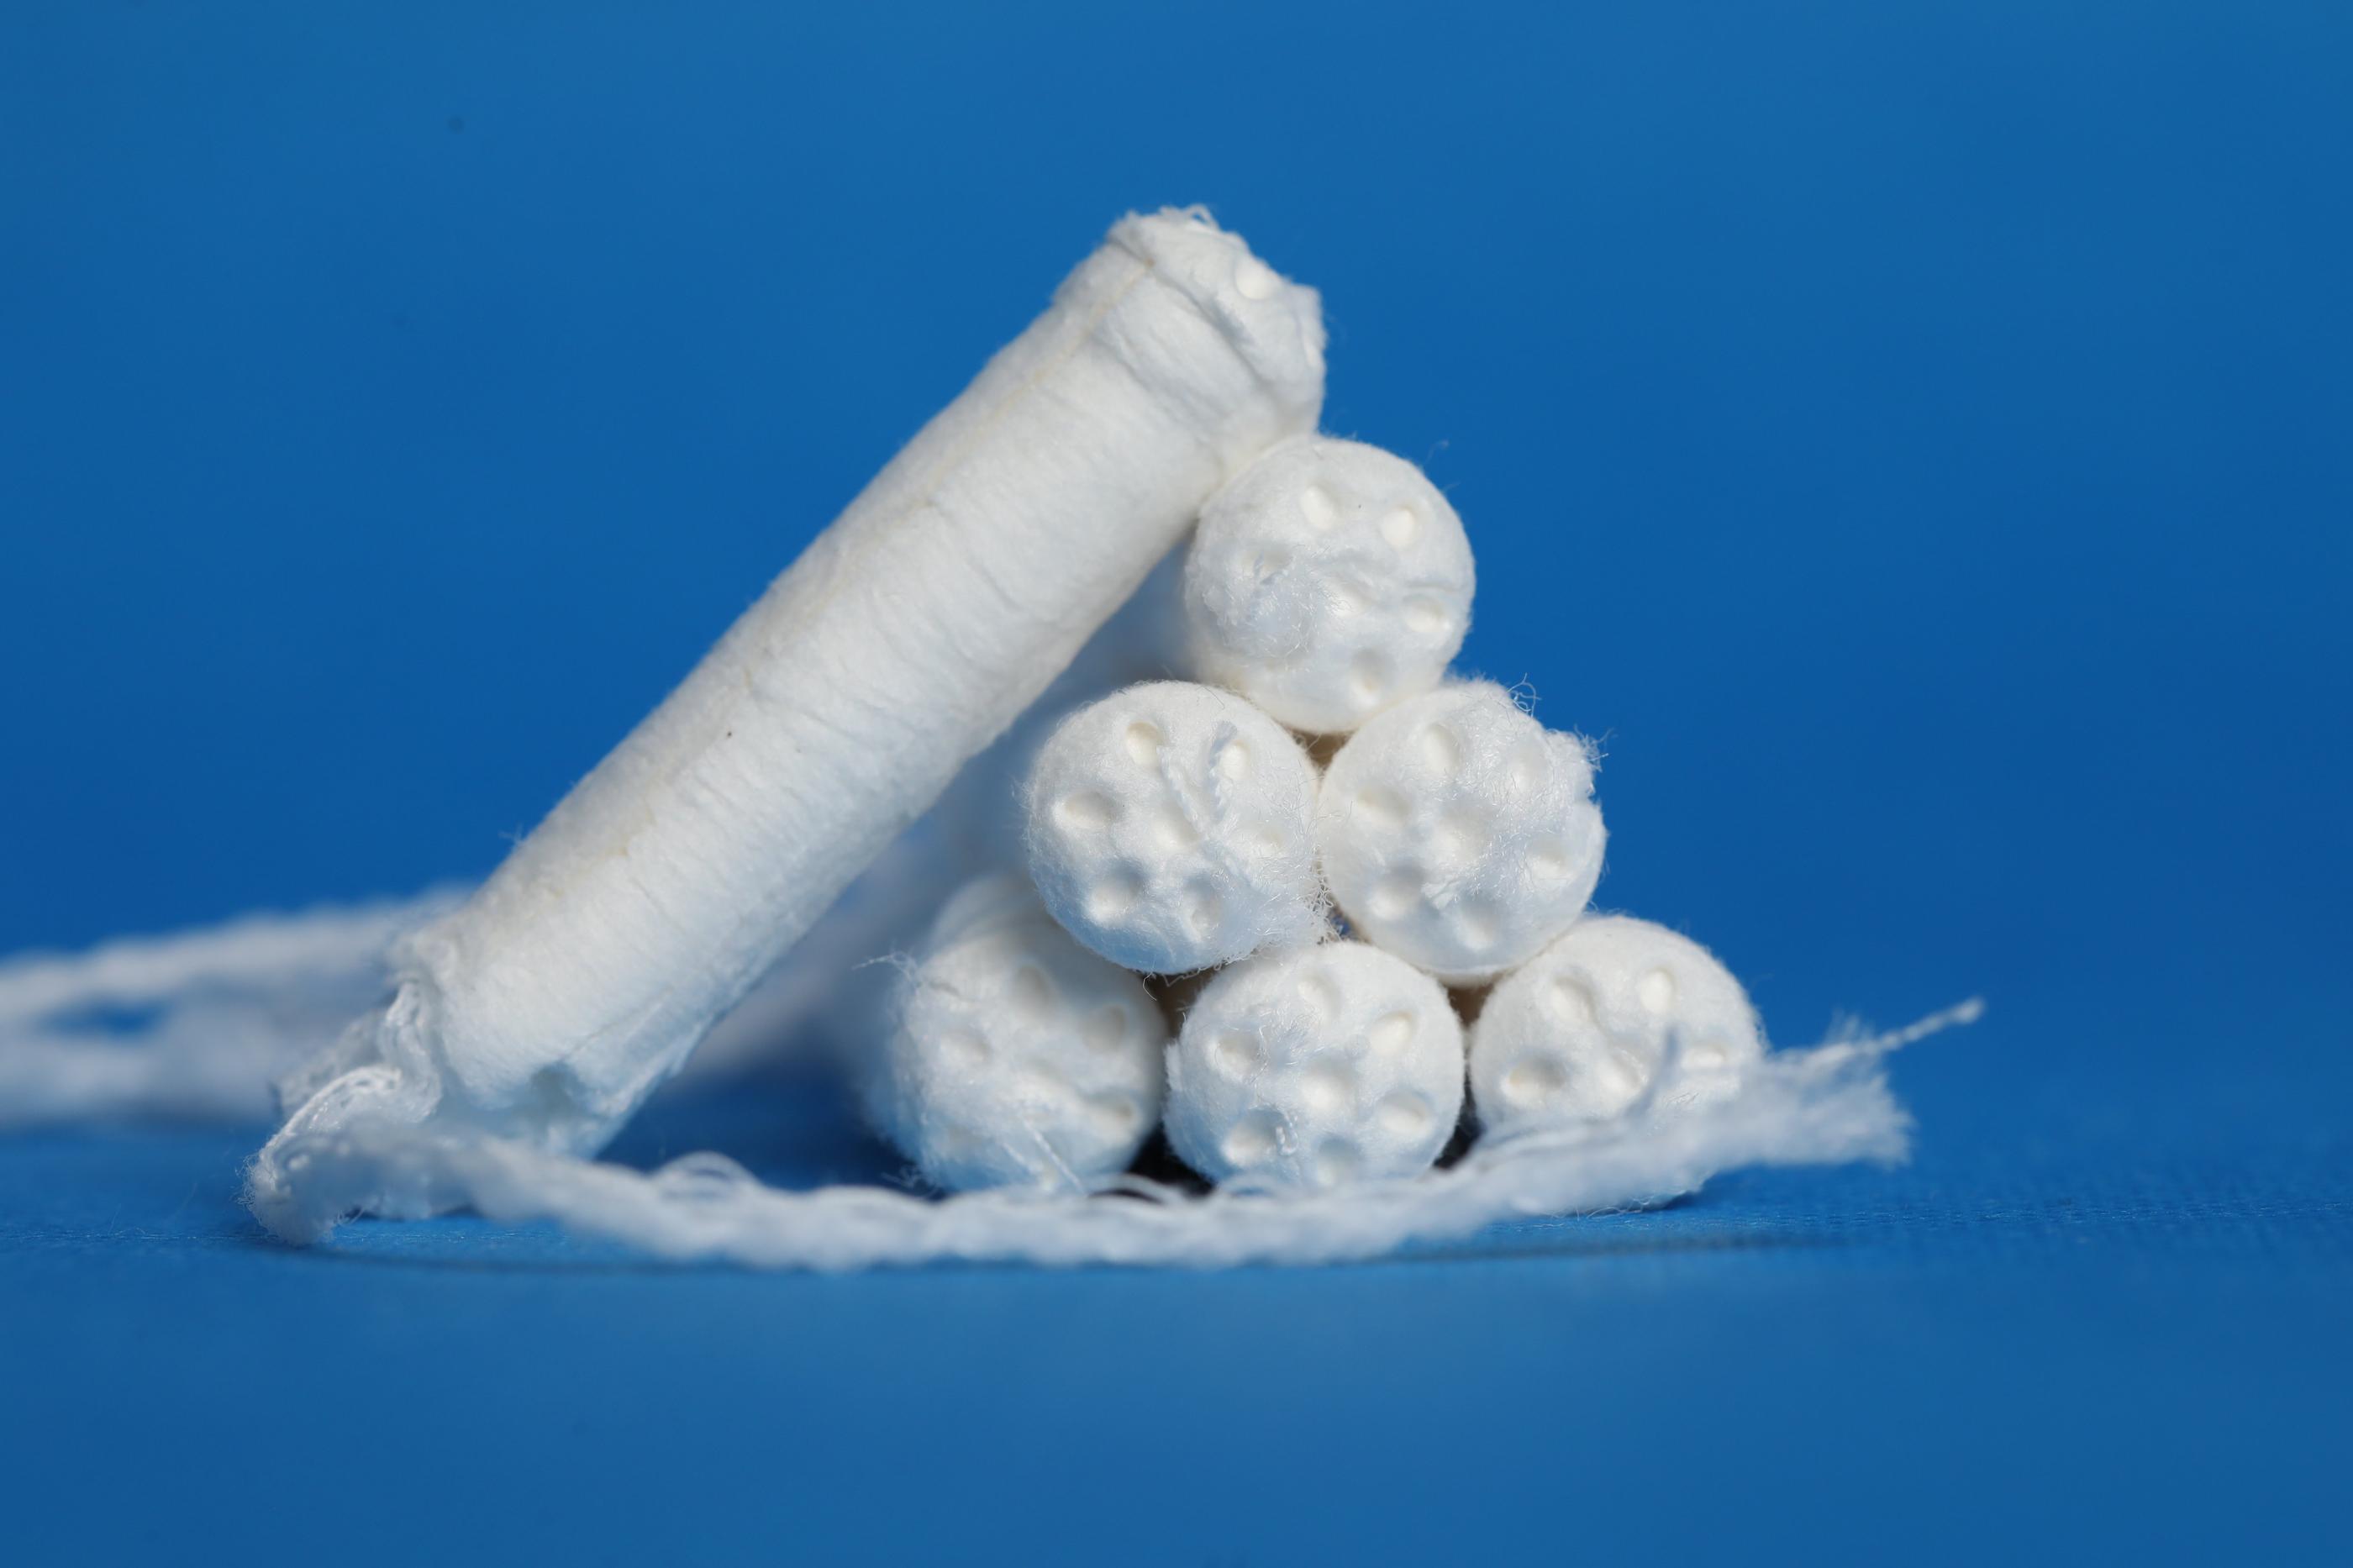 Les tampons et serviettes hygiéniques testés comportent des traces de produits à risque pour la santé. LP/Arnaud Journois